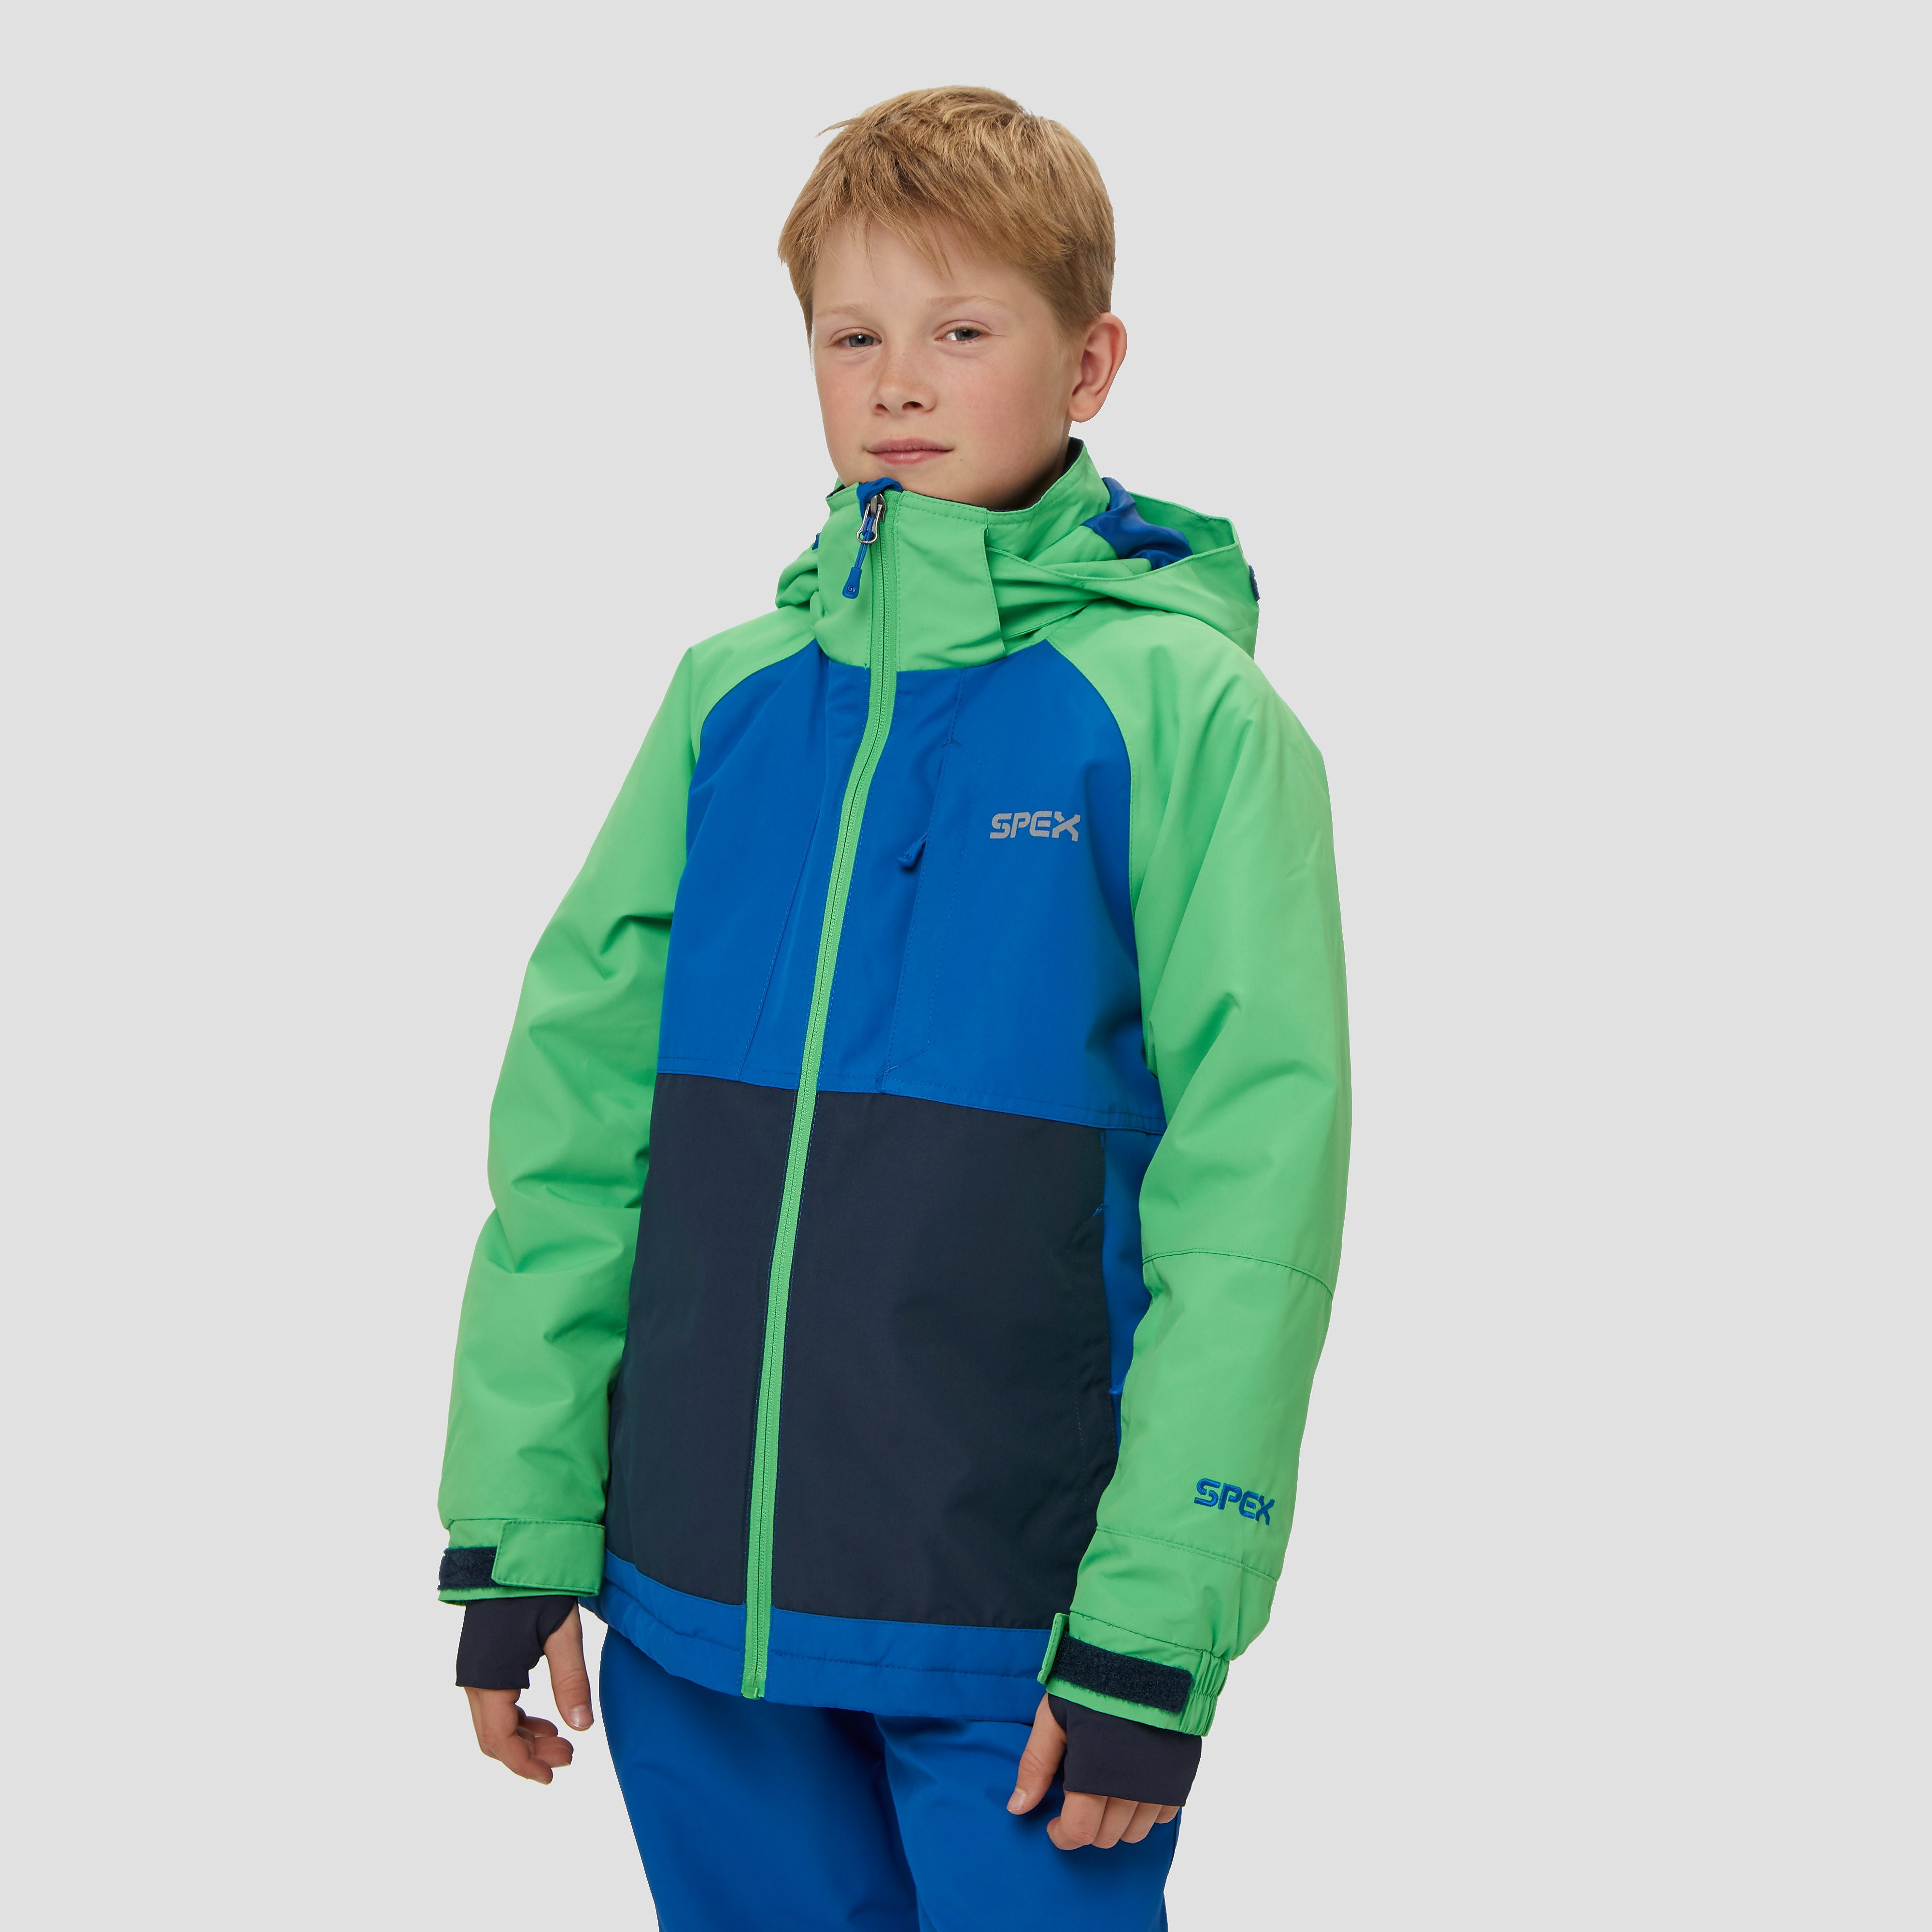 Spex ragax ski jas groen kinderen